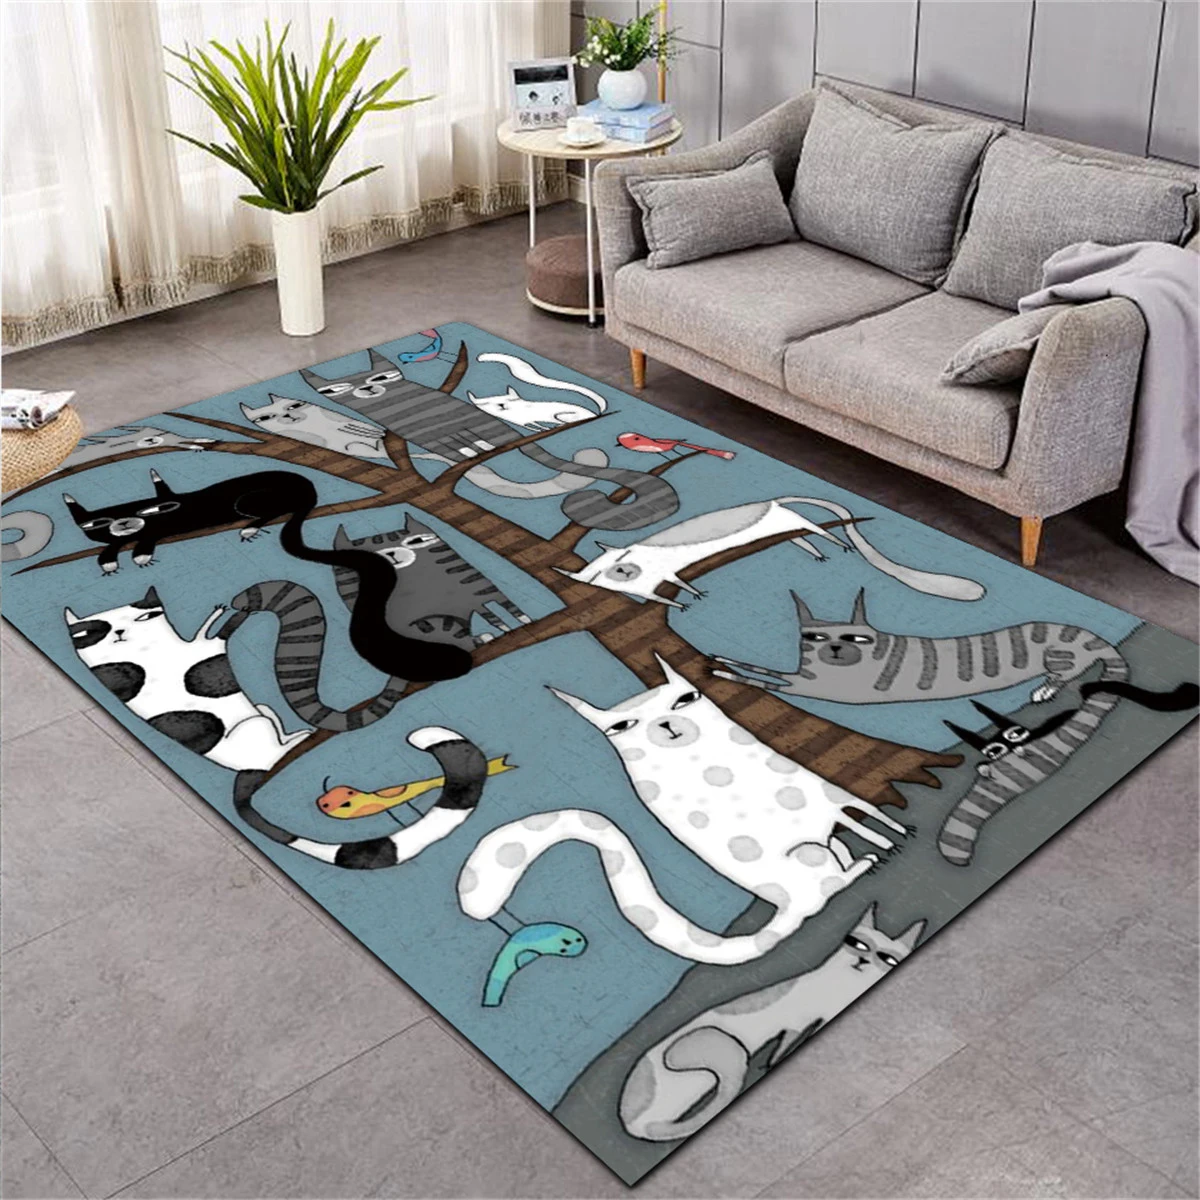 Big Size living room cat rug multiple cat design carpet with cat design cute cat pattern indoor rug